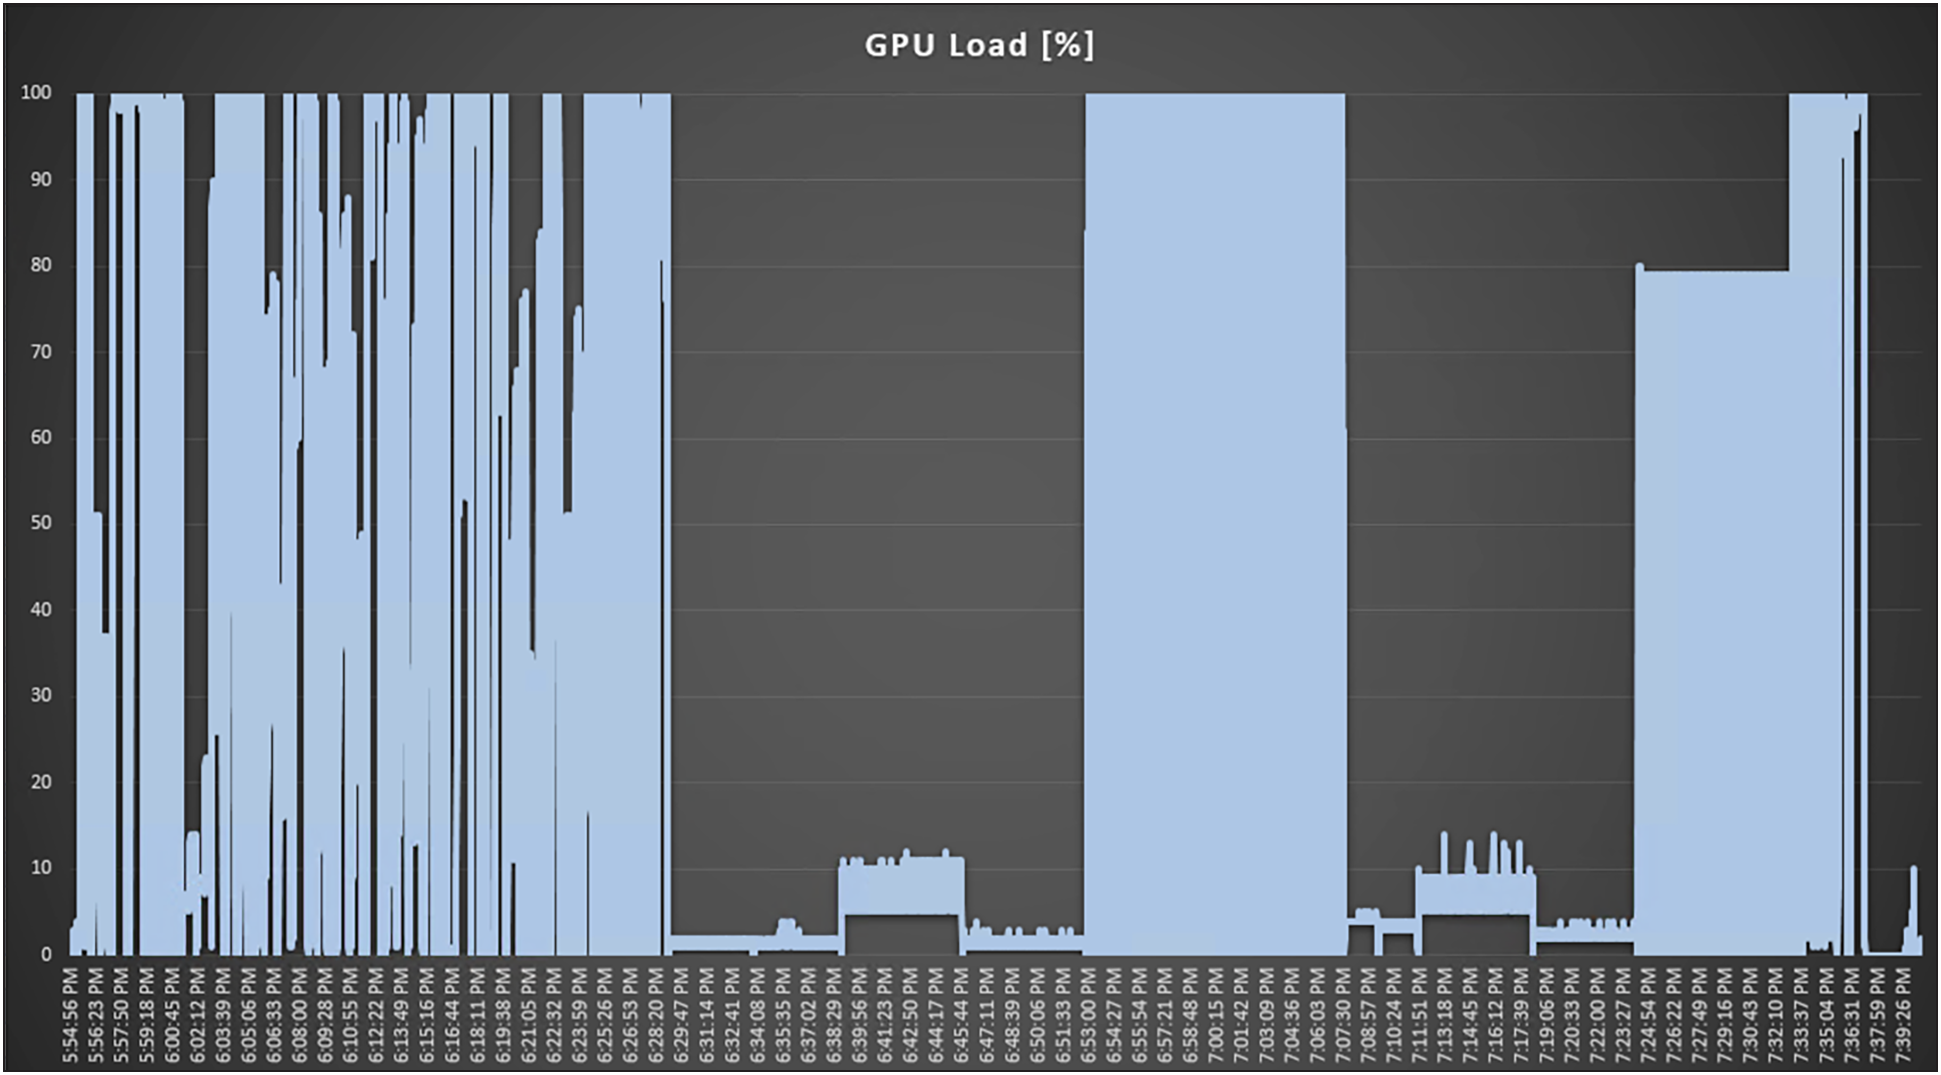 Perfmon GPU utilization